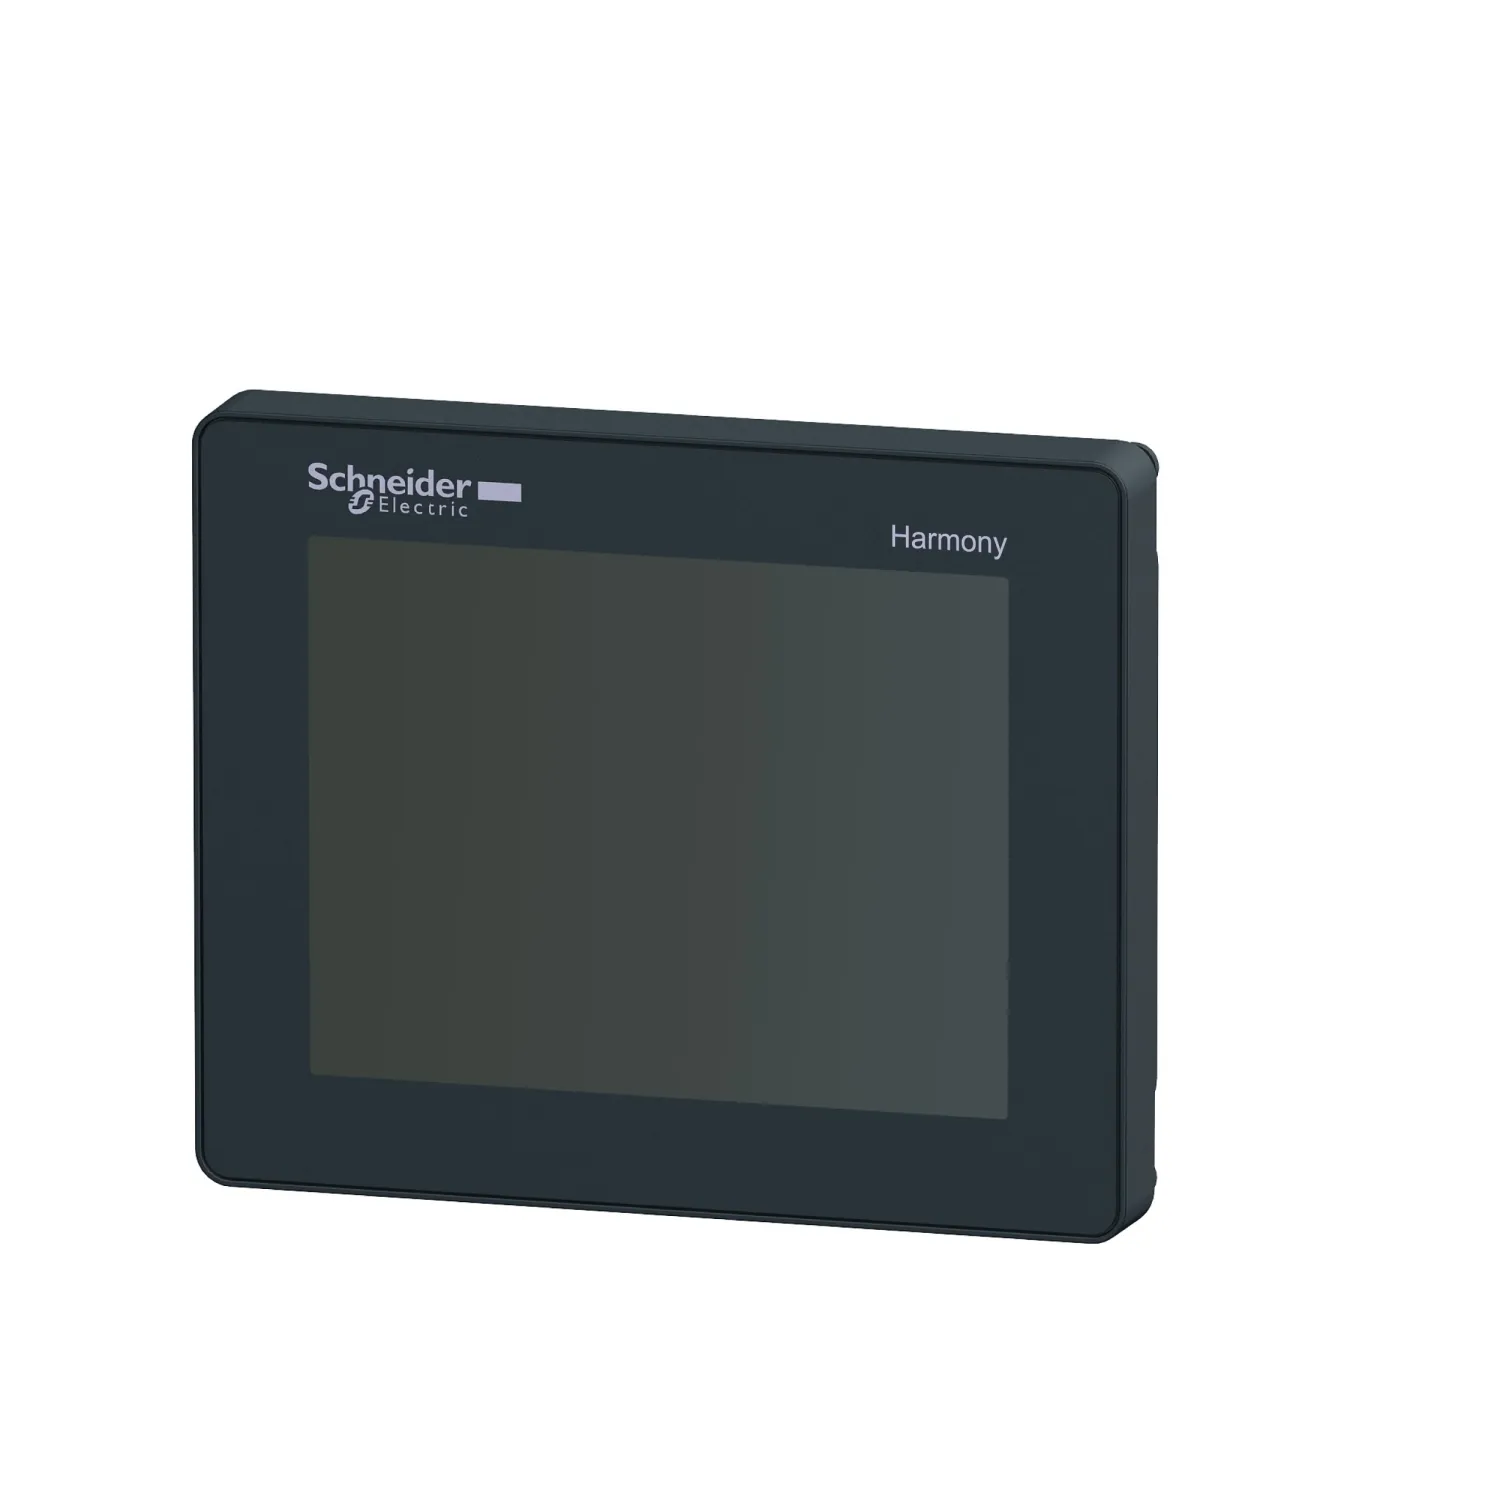 HMIS5T HMISTU655 ile eşleşen 3.5 inç dokunmatik ekran HMIS65